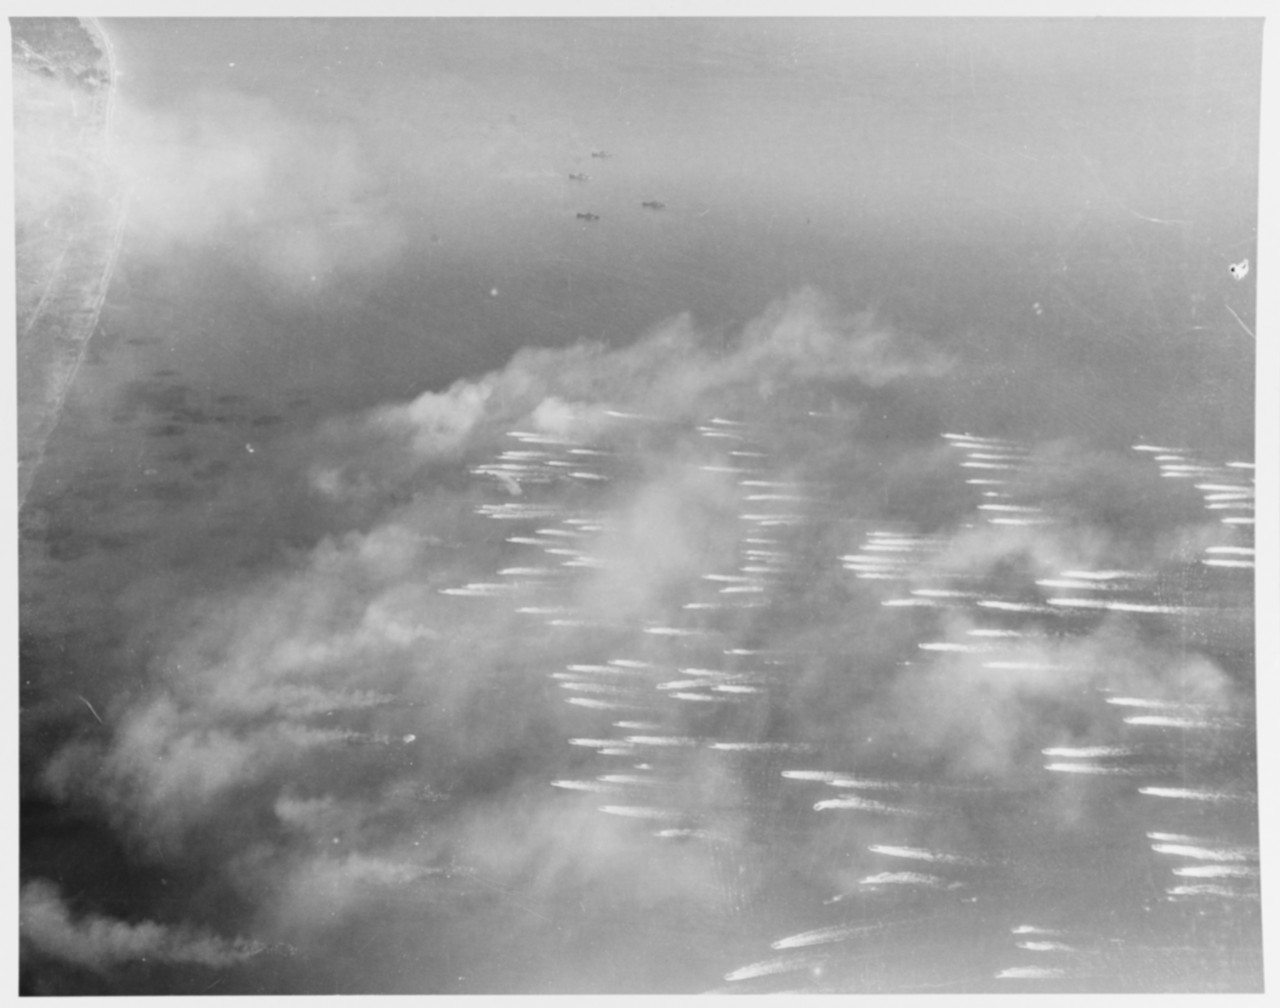 Leyte landings, 20 October 1944.